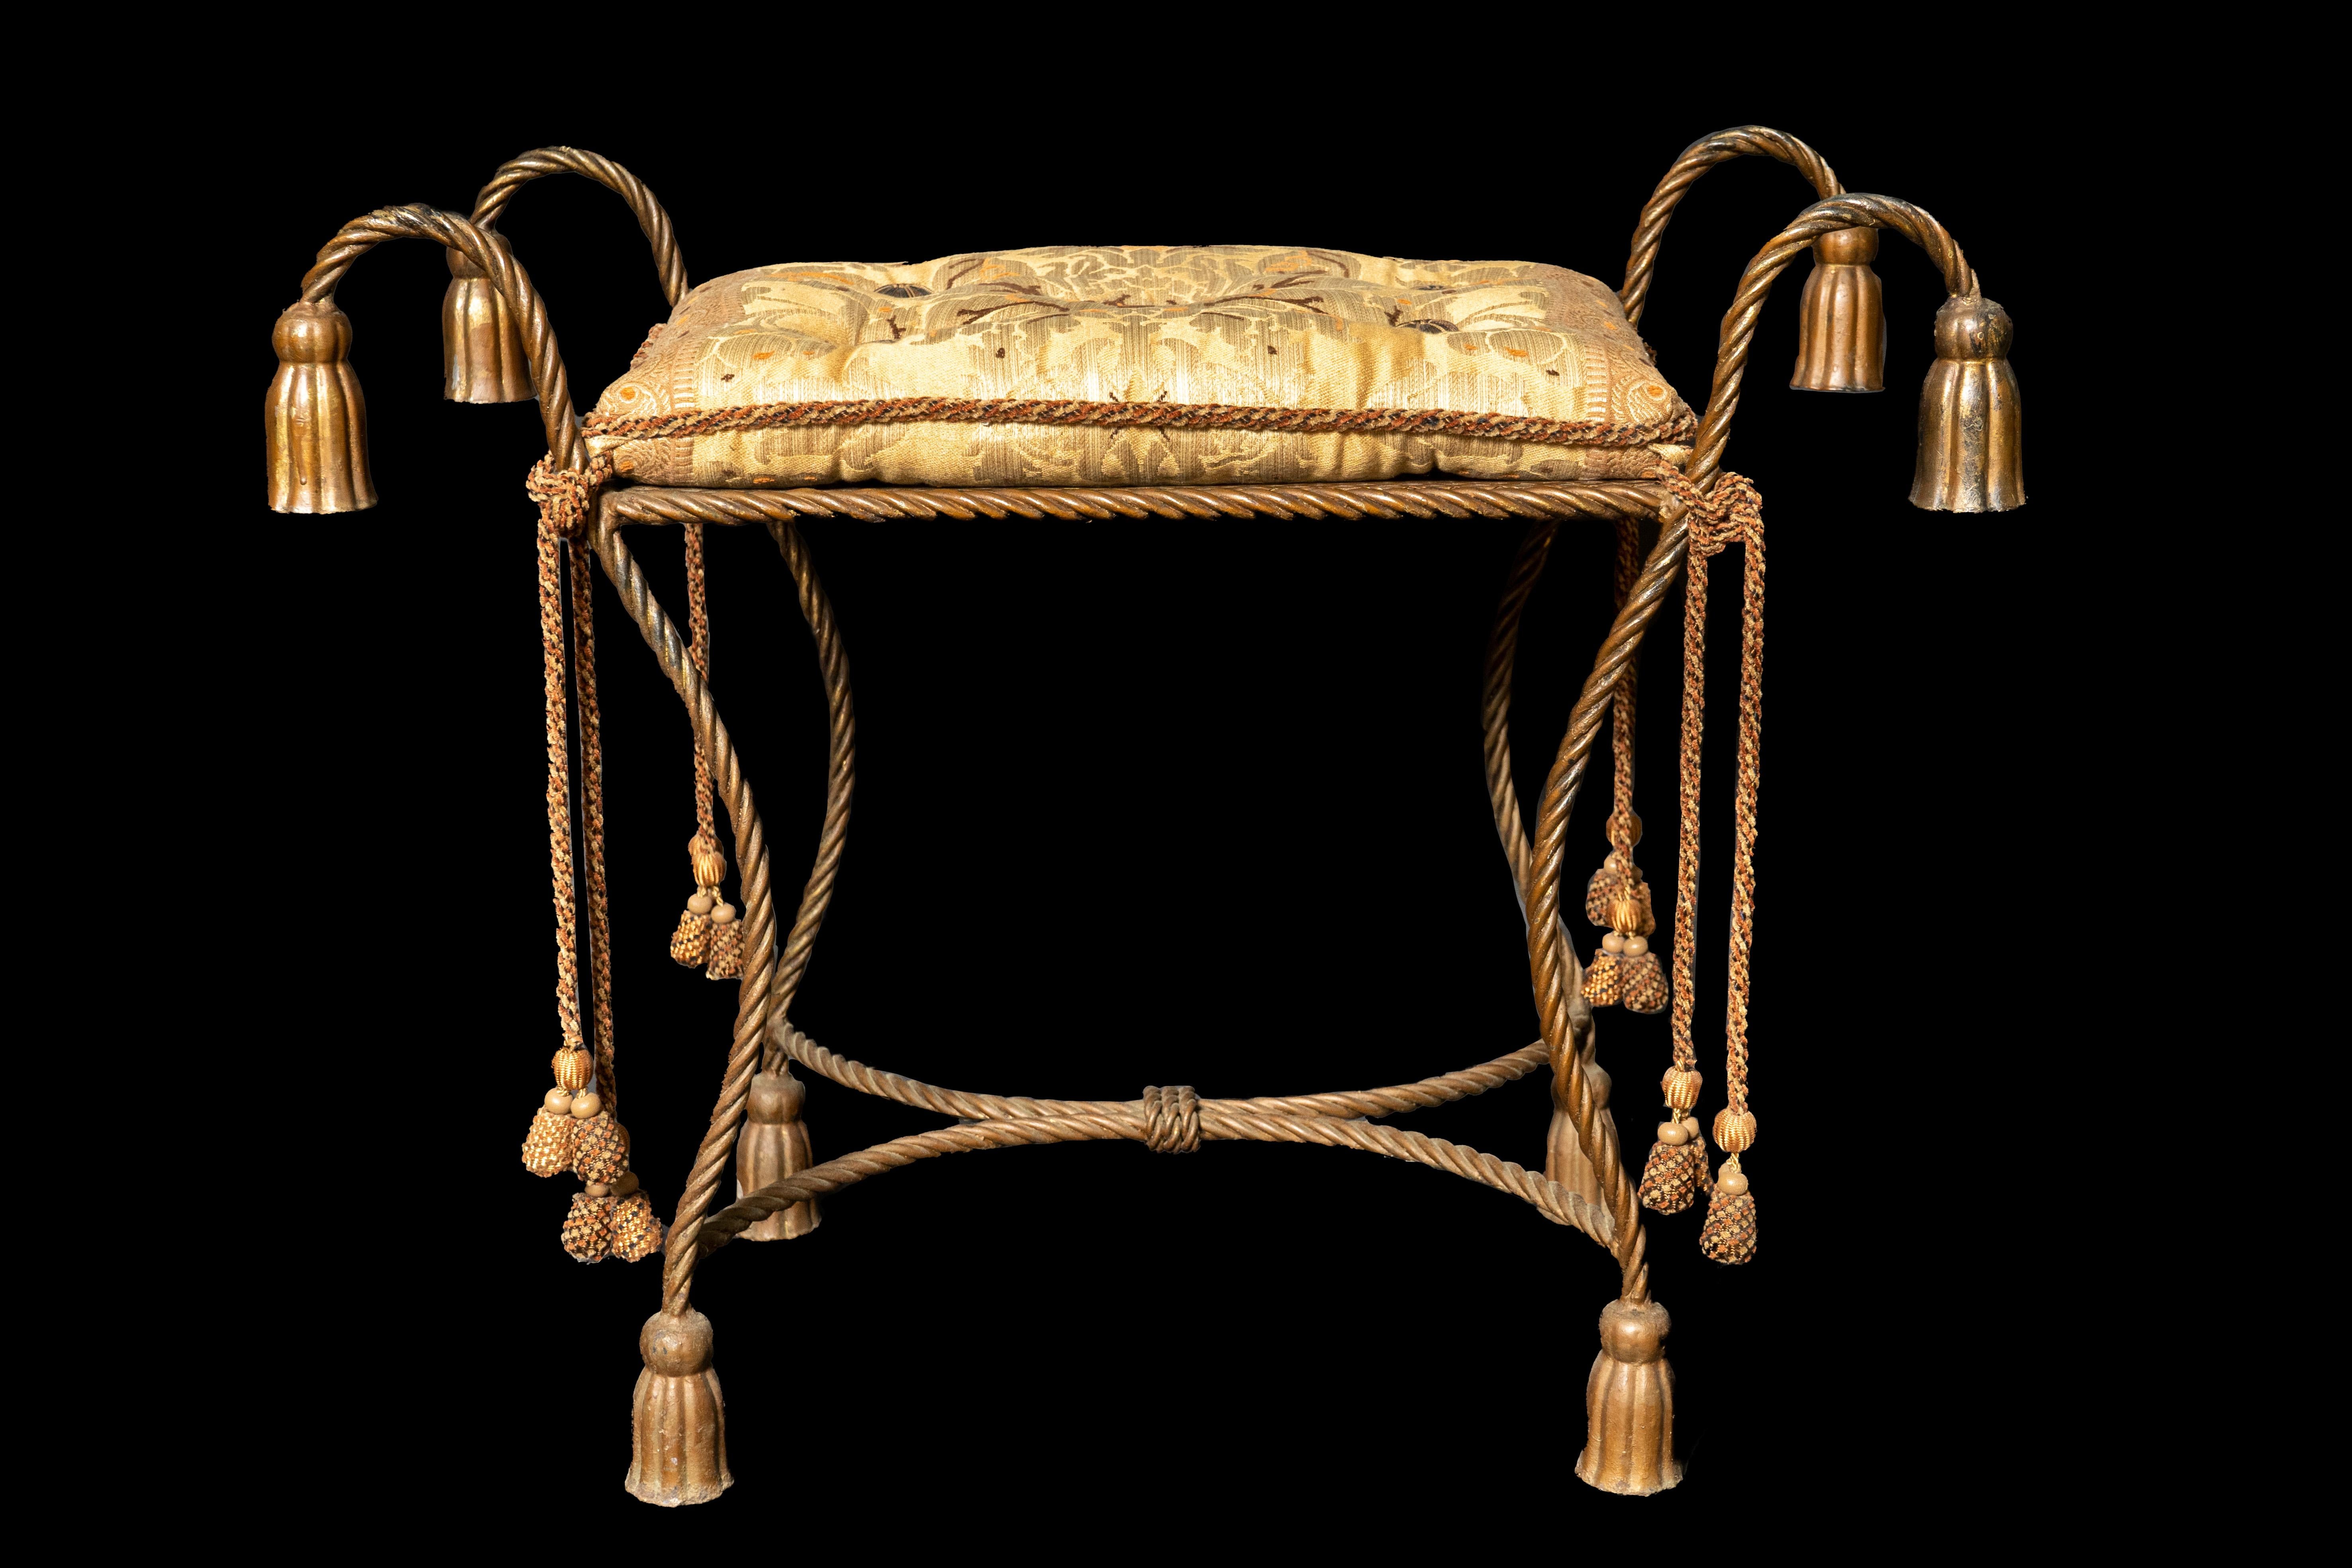 Vintage French rope vanity seat:

Measures: 16